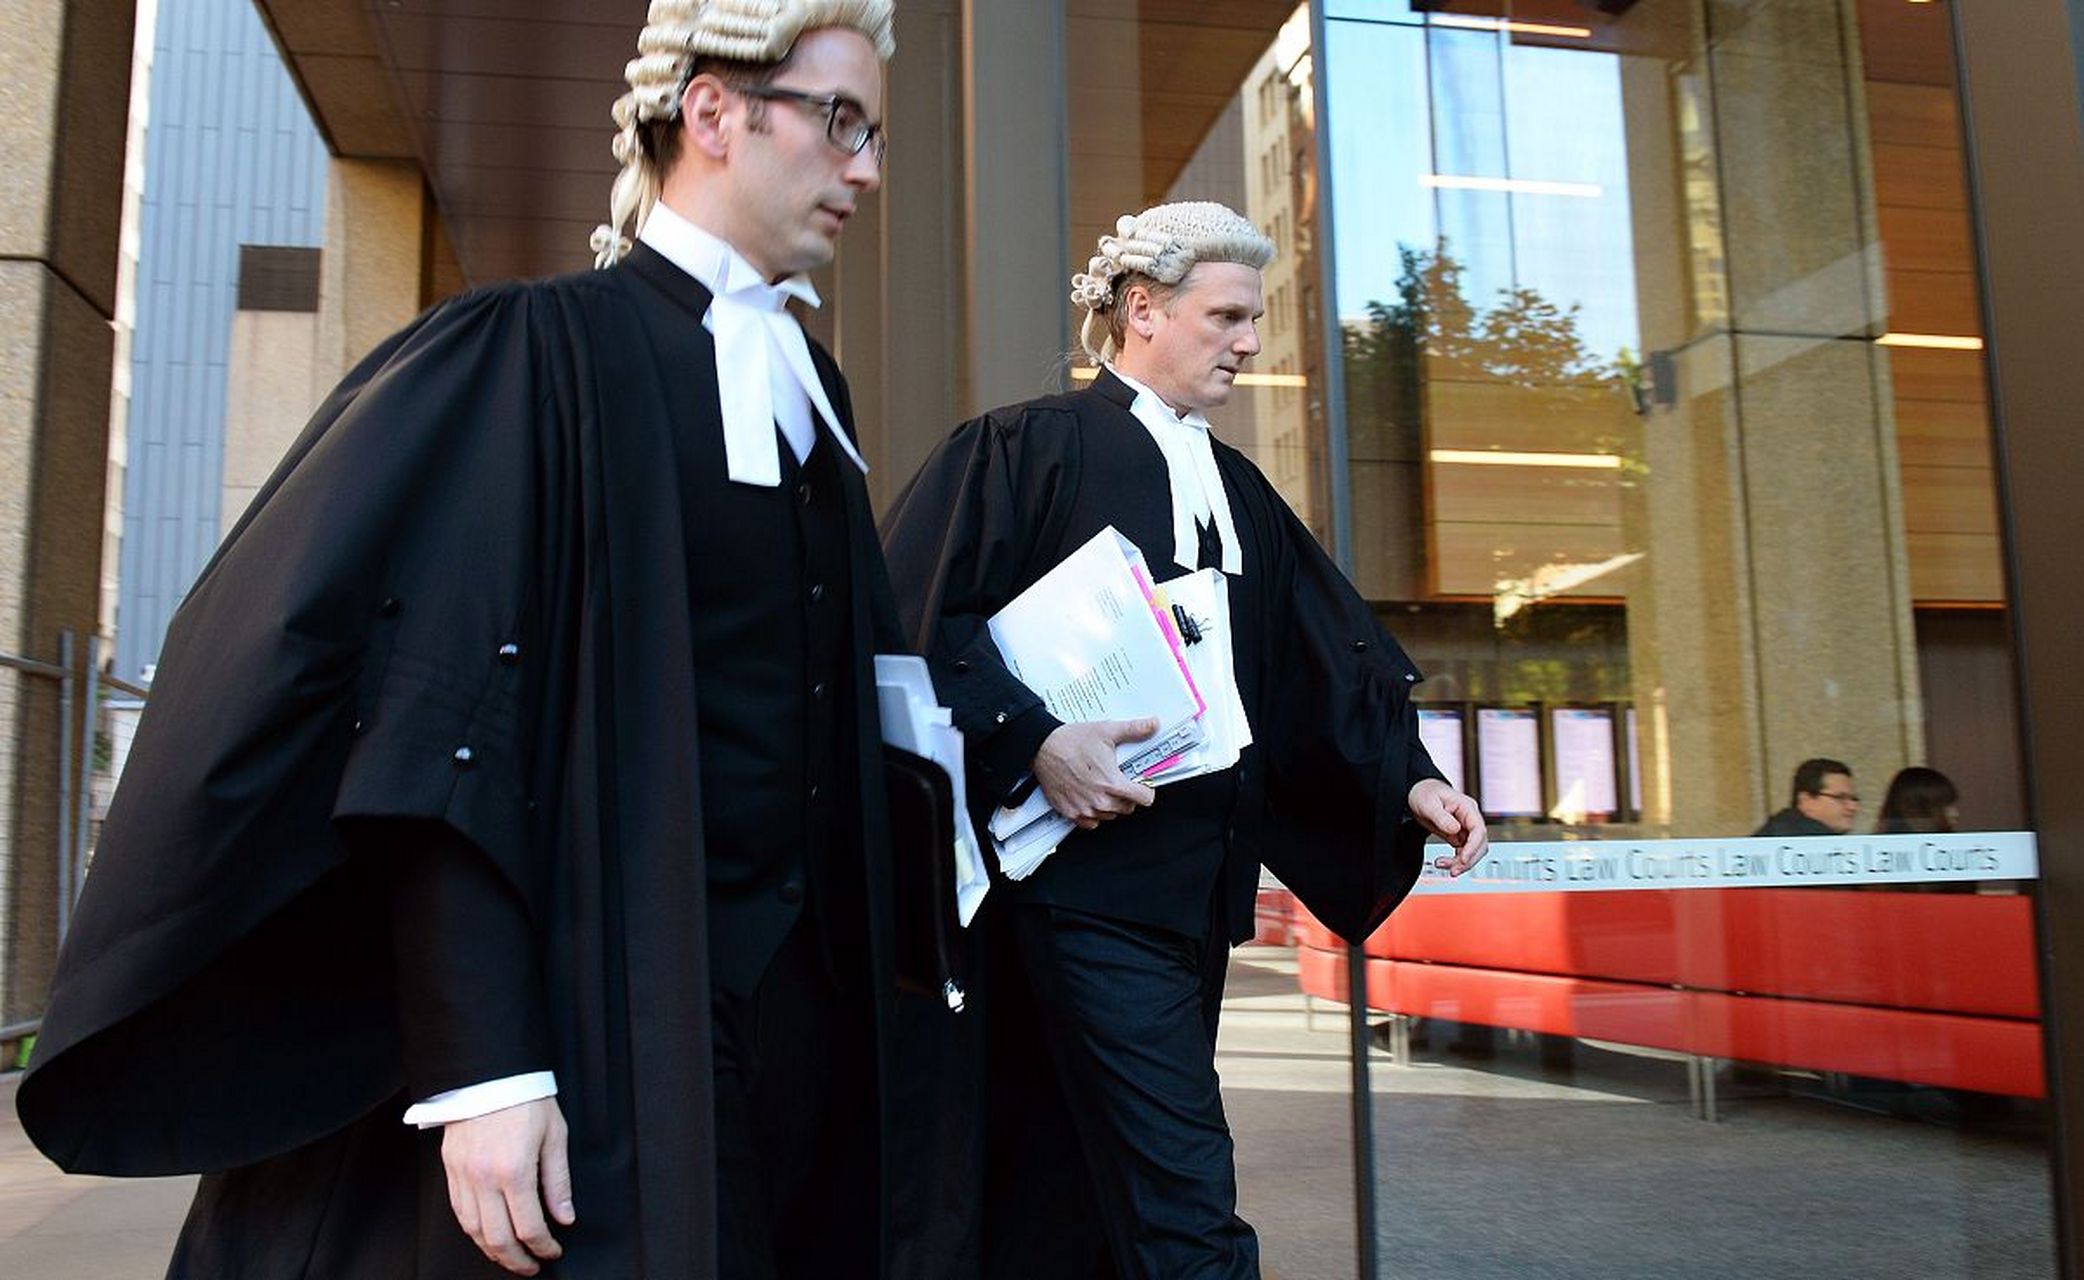 为什么英国的法官会戴假发:在一些影视作品中,经常能看到在英国法庭上